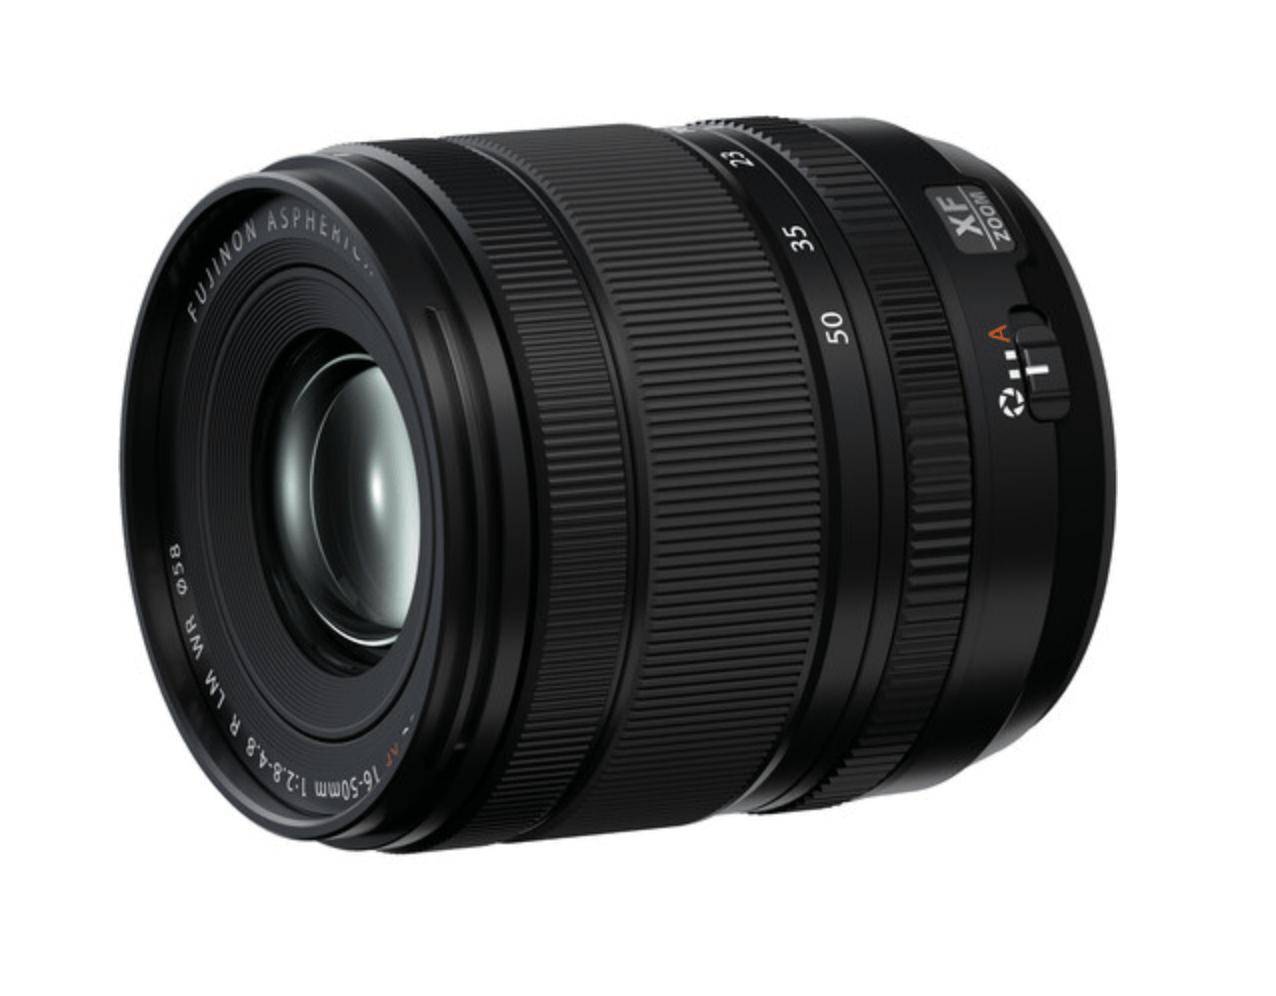 富士 X-T50 / GFX100S II 相机及镜头国行价格公布